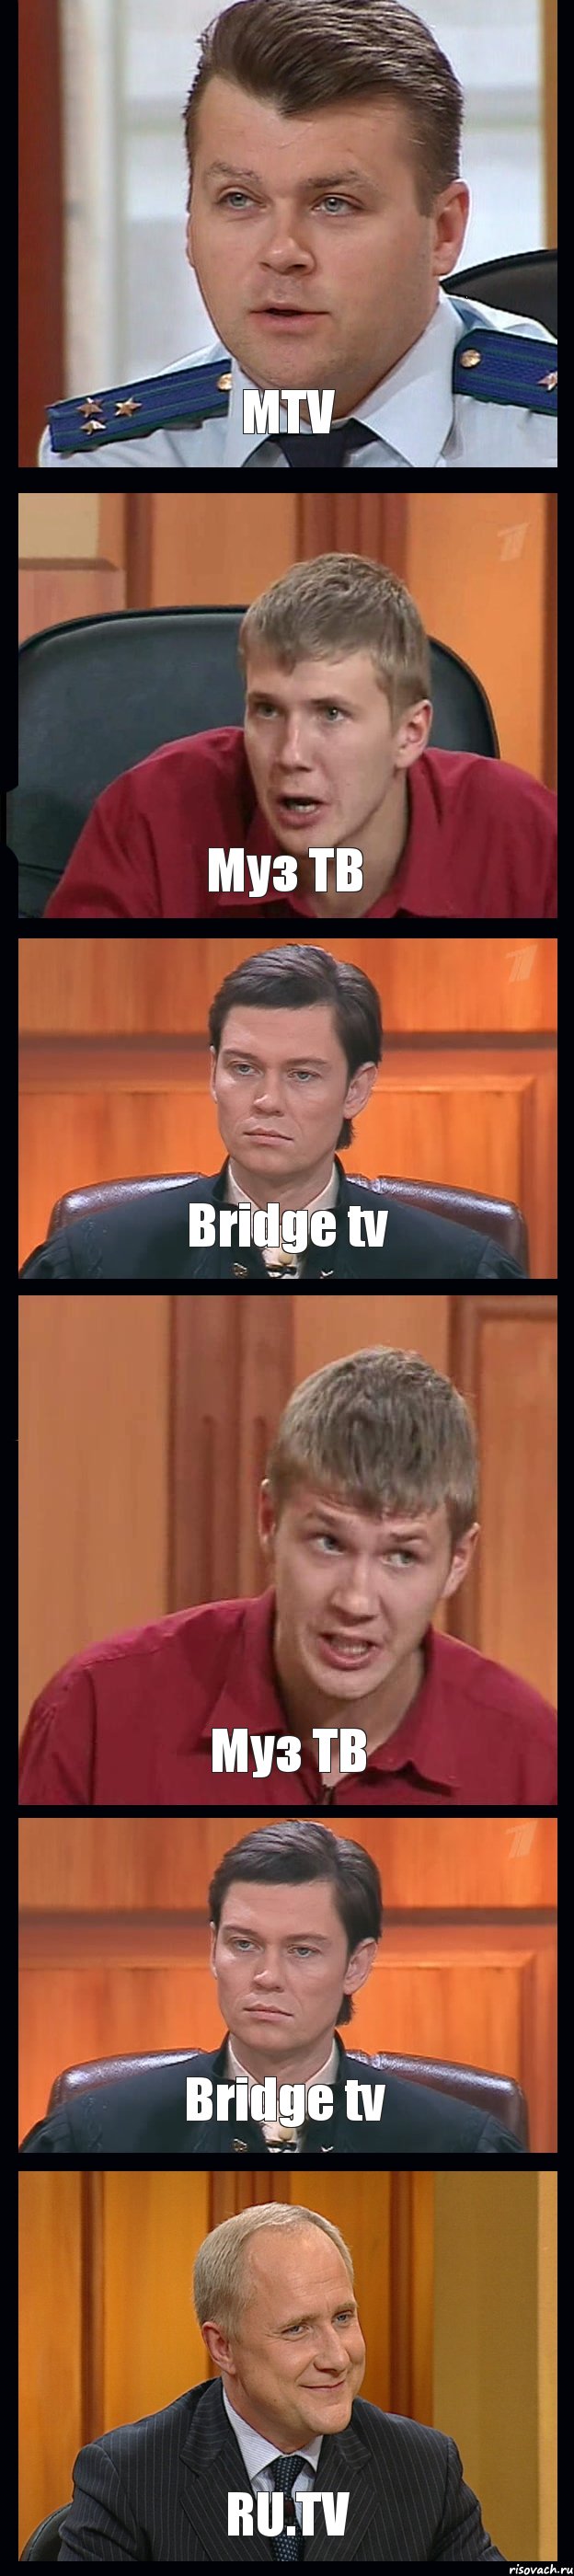 MTV Муз ТВ Bridge tv Муз ТВ Bridge tv RU.TV, Комикс Федеральный судья